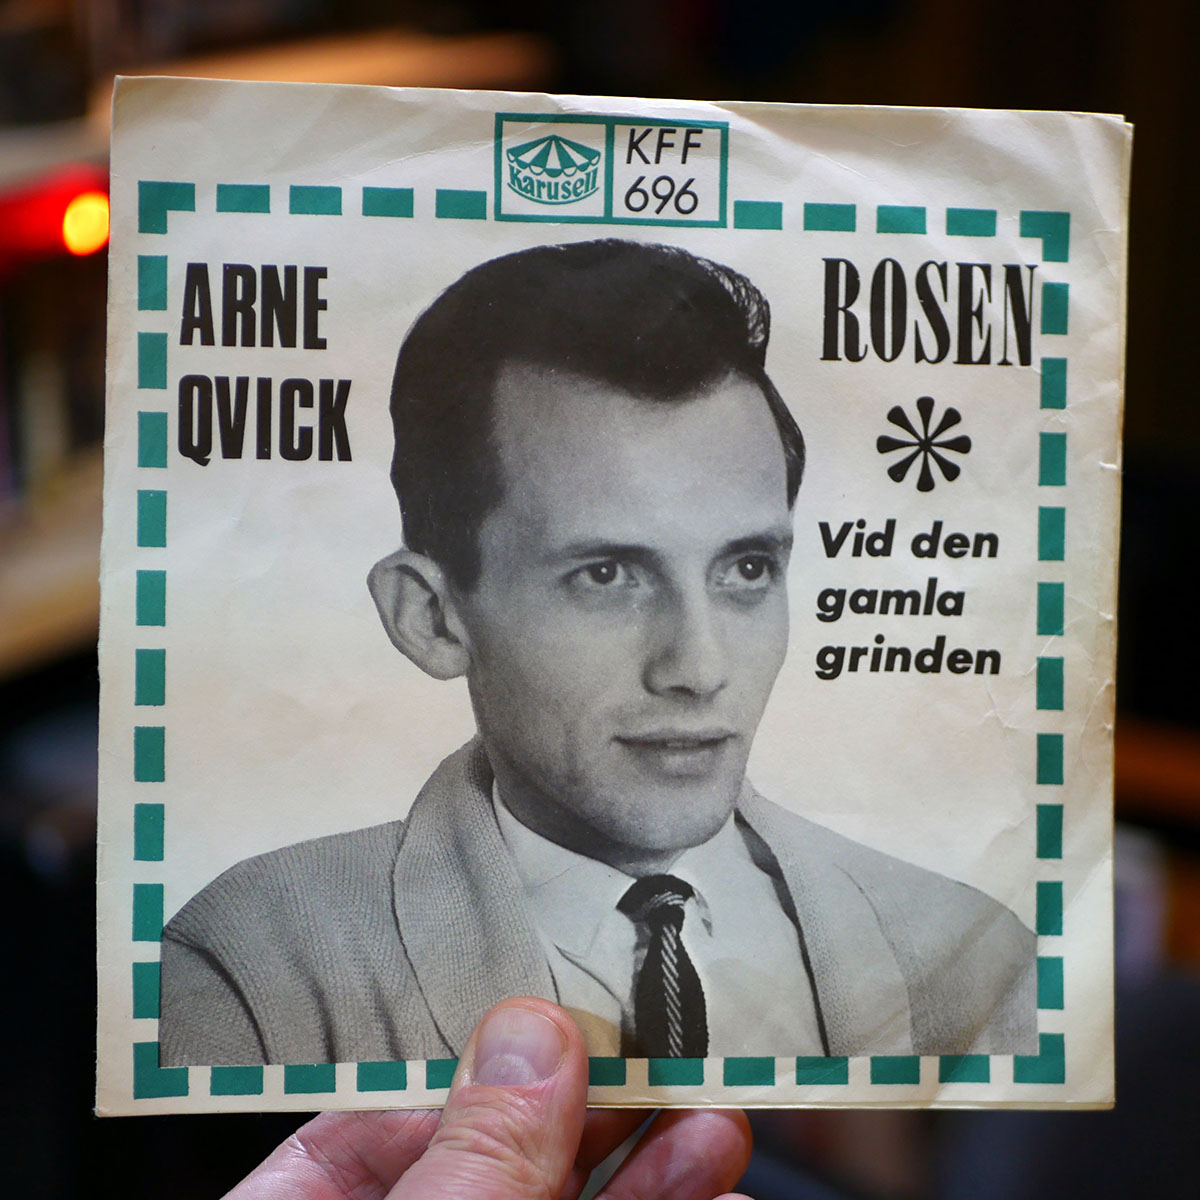 Arne Qvick – Rosen [7", 1966]